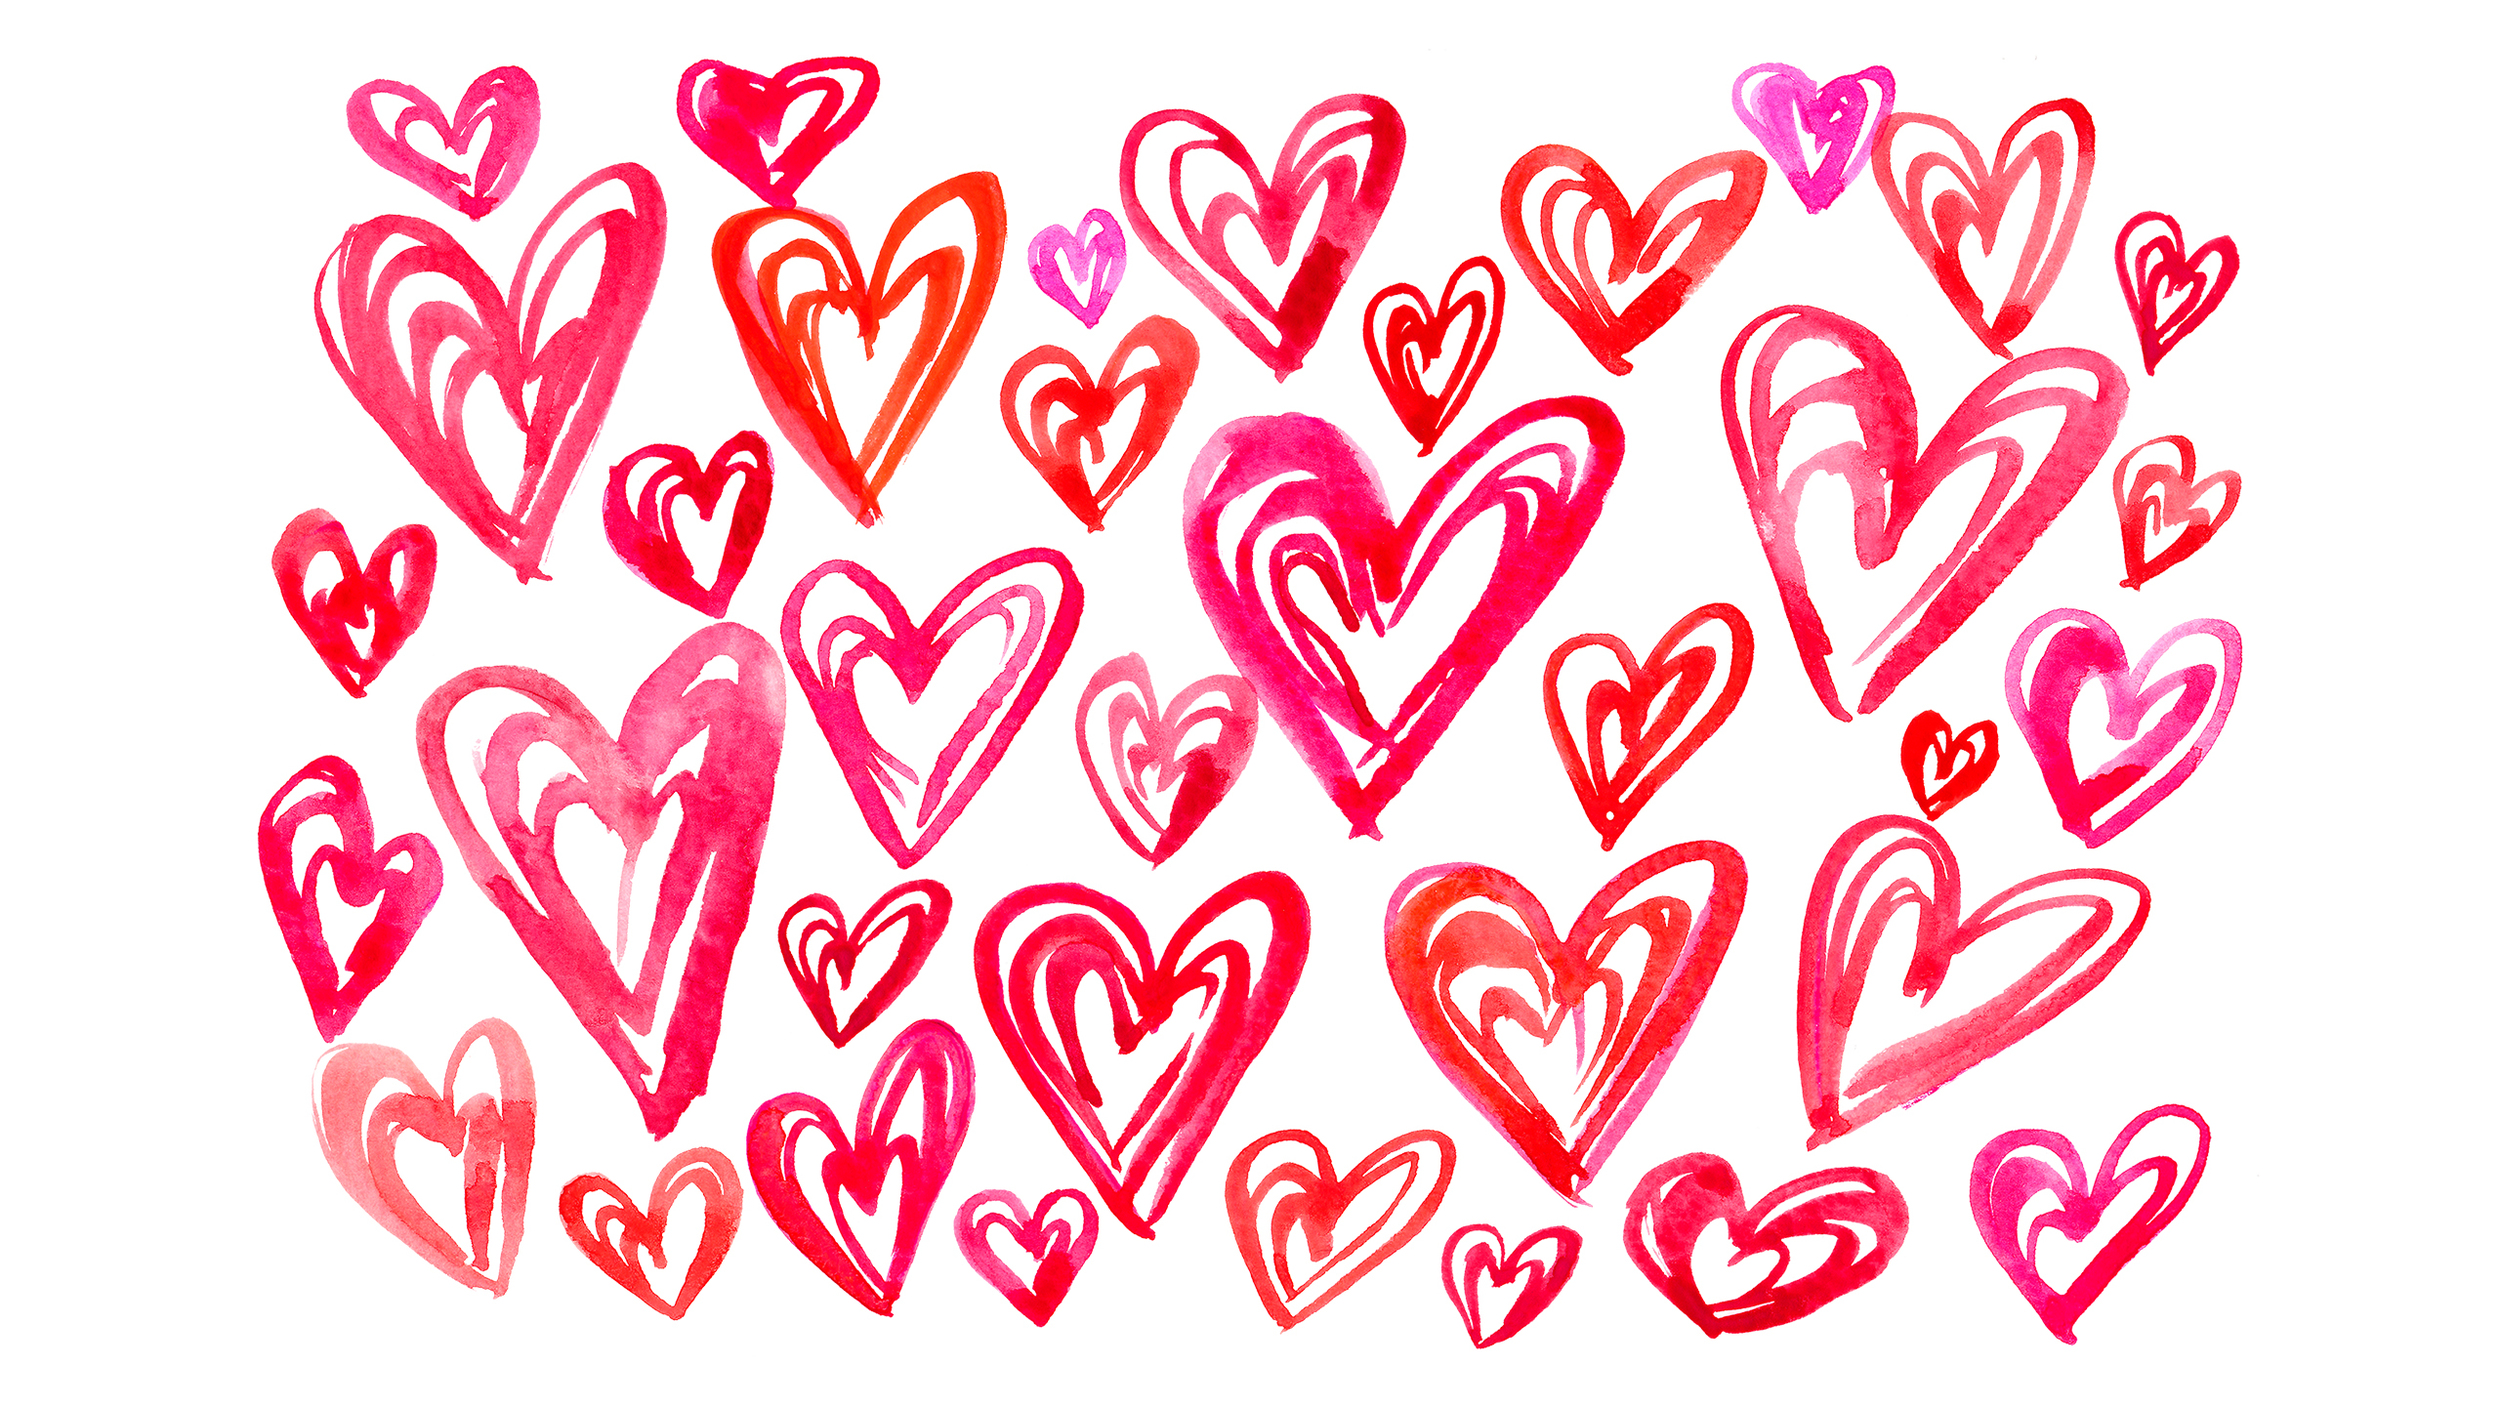 Chúc mừng ngày Valentine vui vẻ với những bức hình minh họa đầy yêu thương và lãng mạn. Hãy để bức tranh vẽ tình yêu ấy chia sẻ cảm xúc giữa bạn và người ấy. Bức họa độc đáo mang tông màu chủ đạo là hồng và đỏ sẽ khiến cho những cặp đôi say đắm không thể rời mắt!